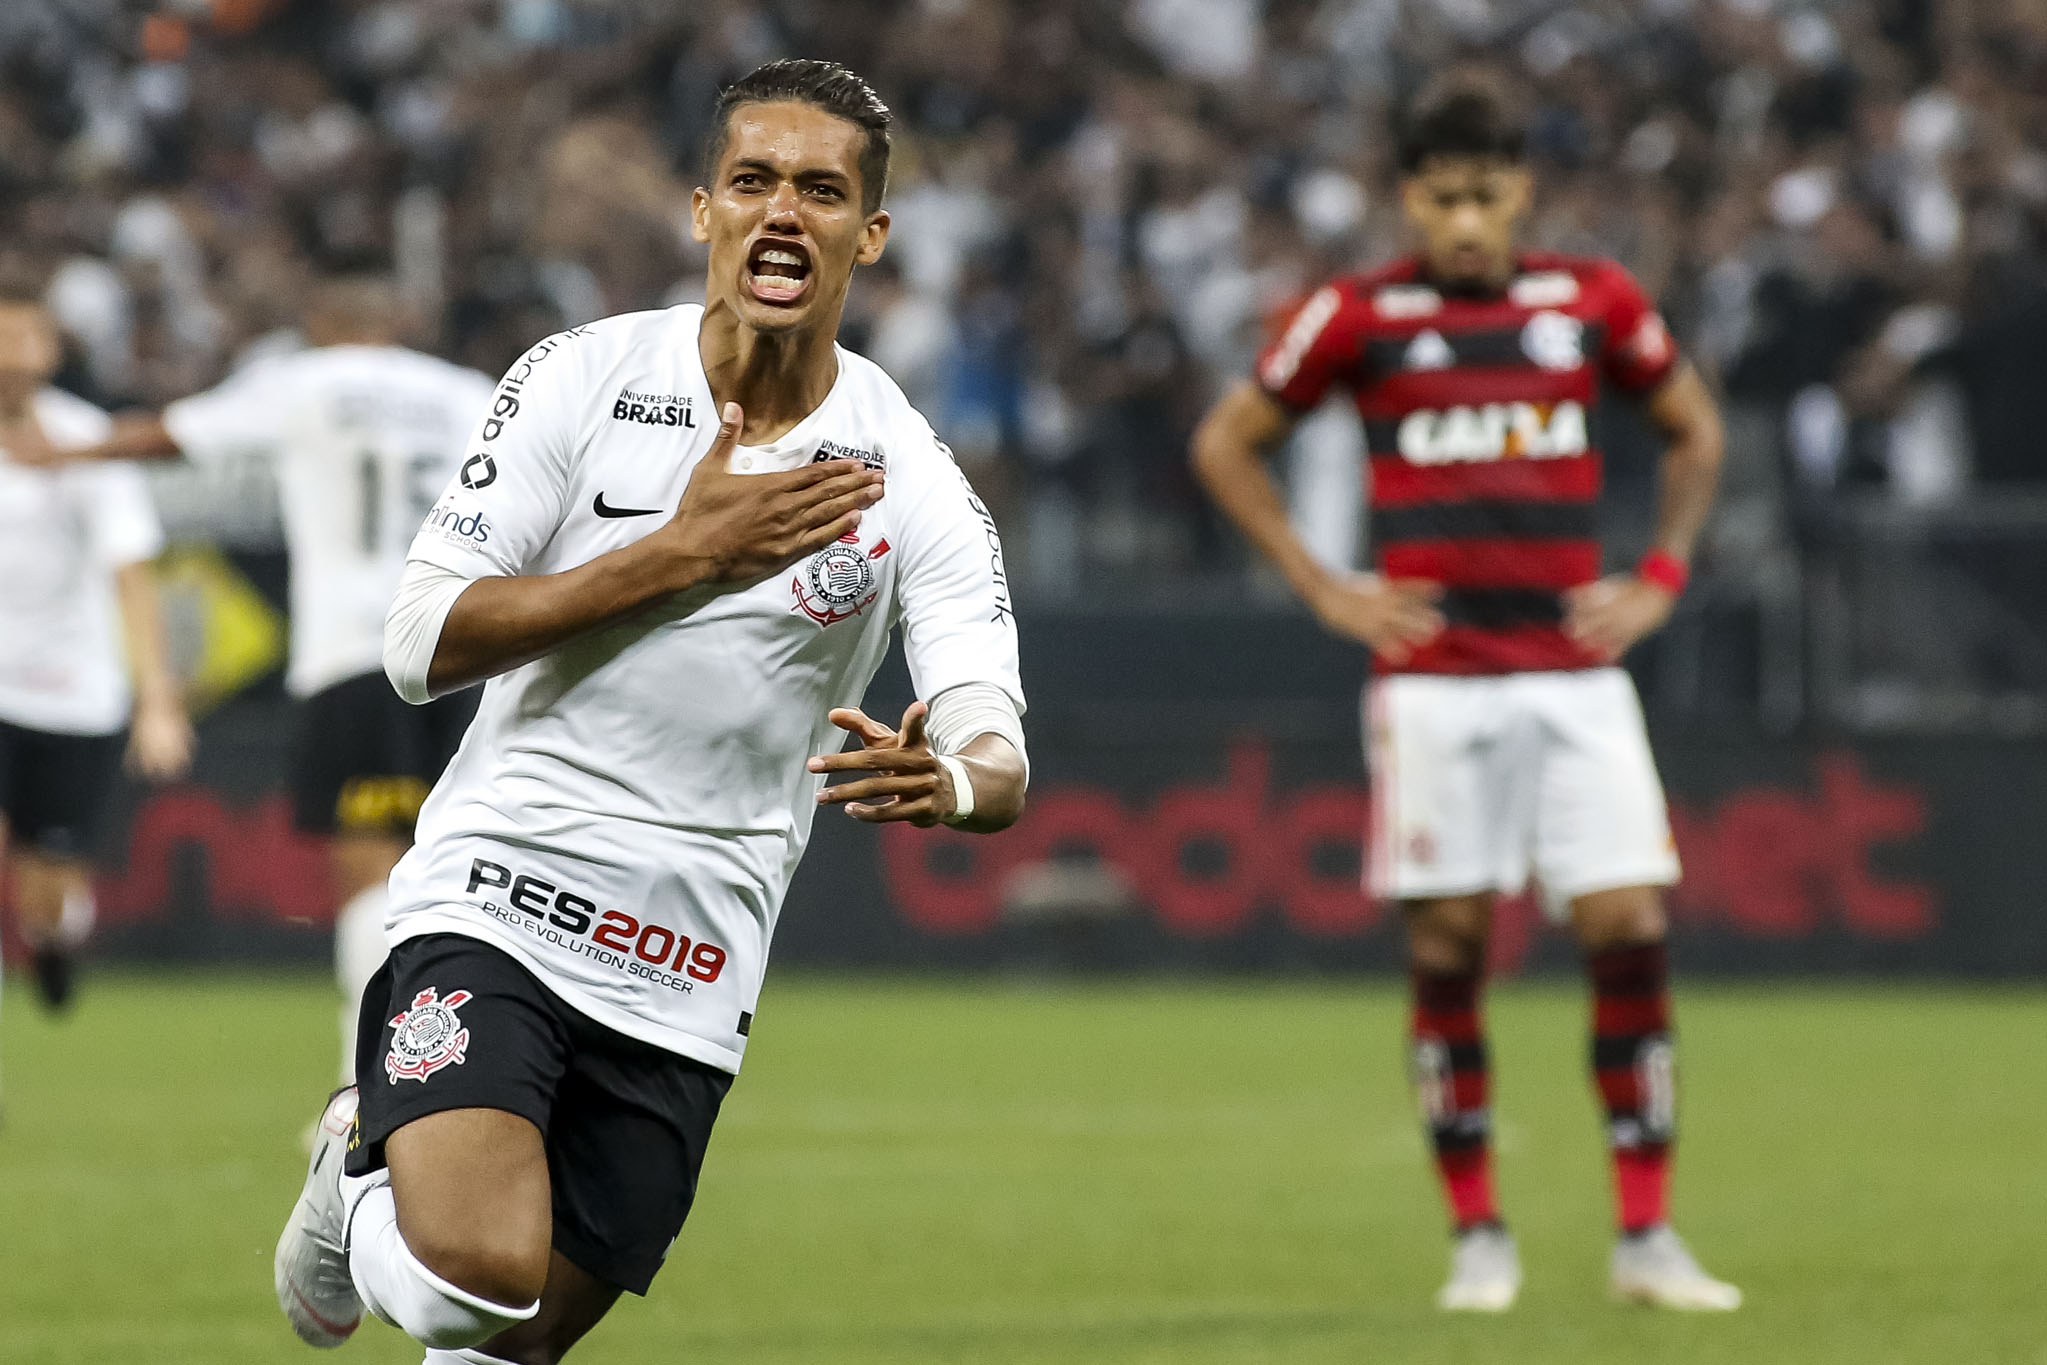 Segundo jogo da final da Copa do Brasil entre Corinthians x Flamengo será no  Maracanã